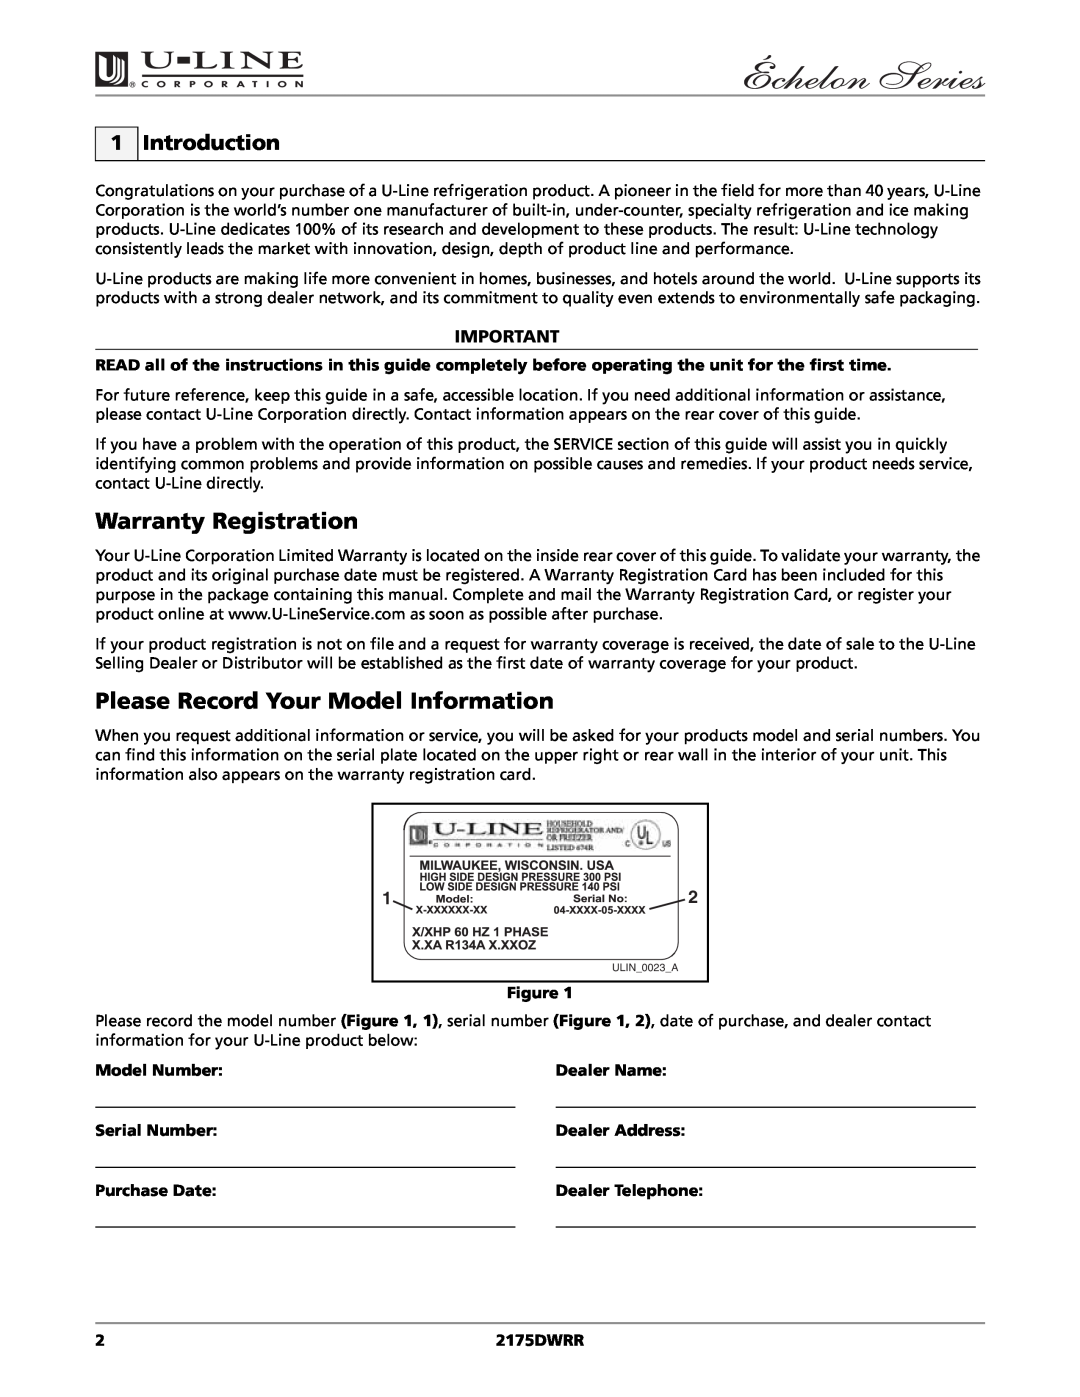 U-Line 2175DWRR manual Warranty Registration, Please Record Your Model Information, Introduction, Model Number, Dealer Name 